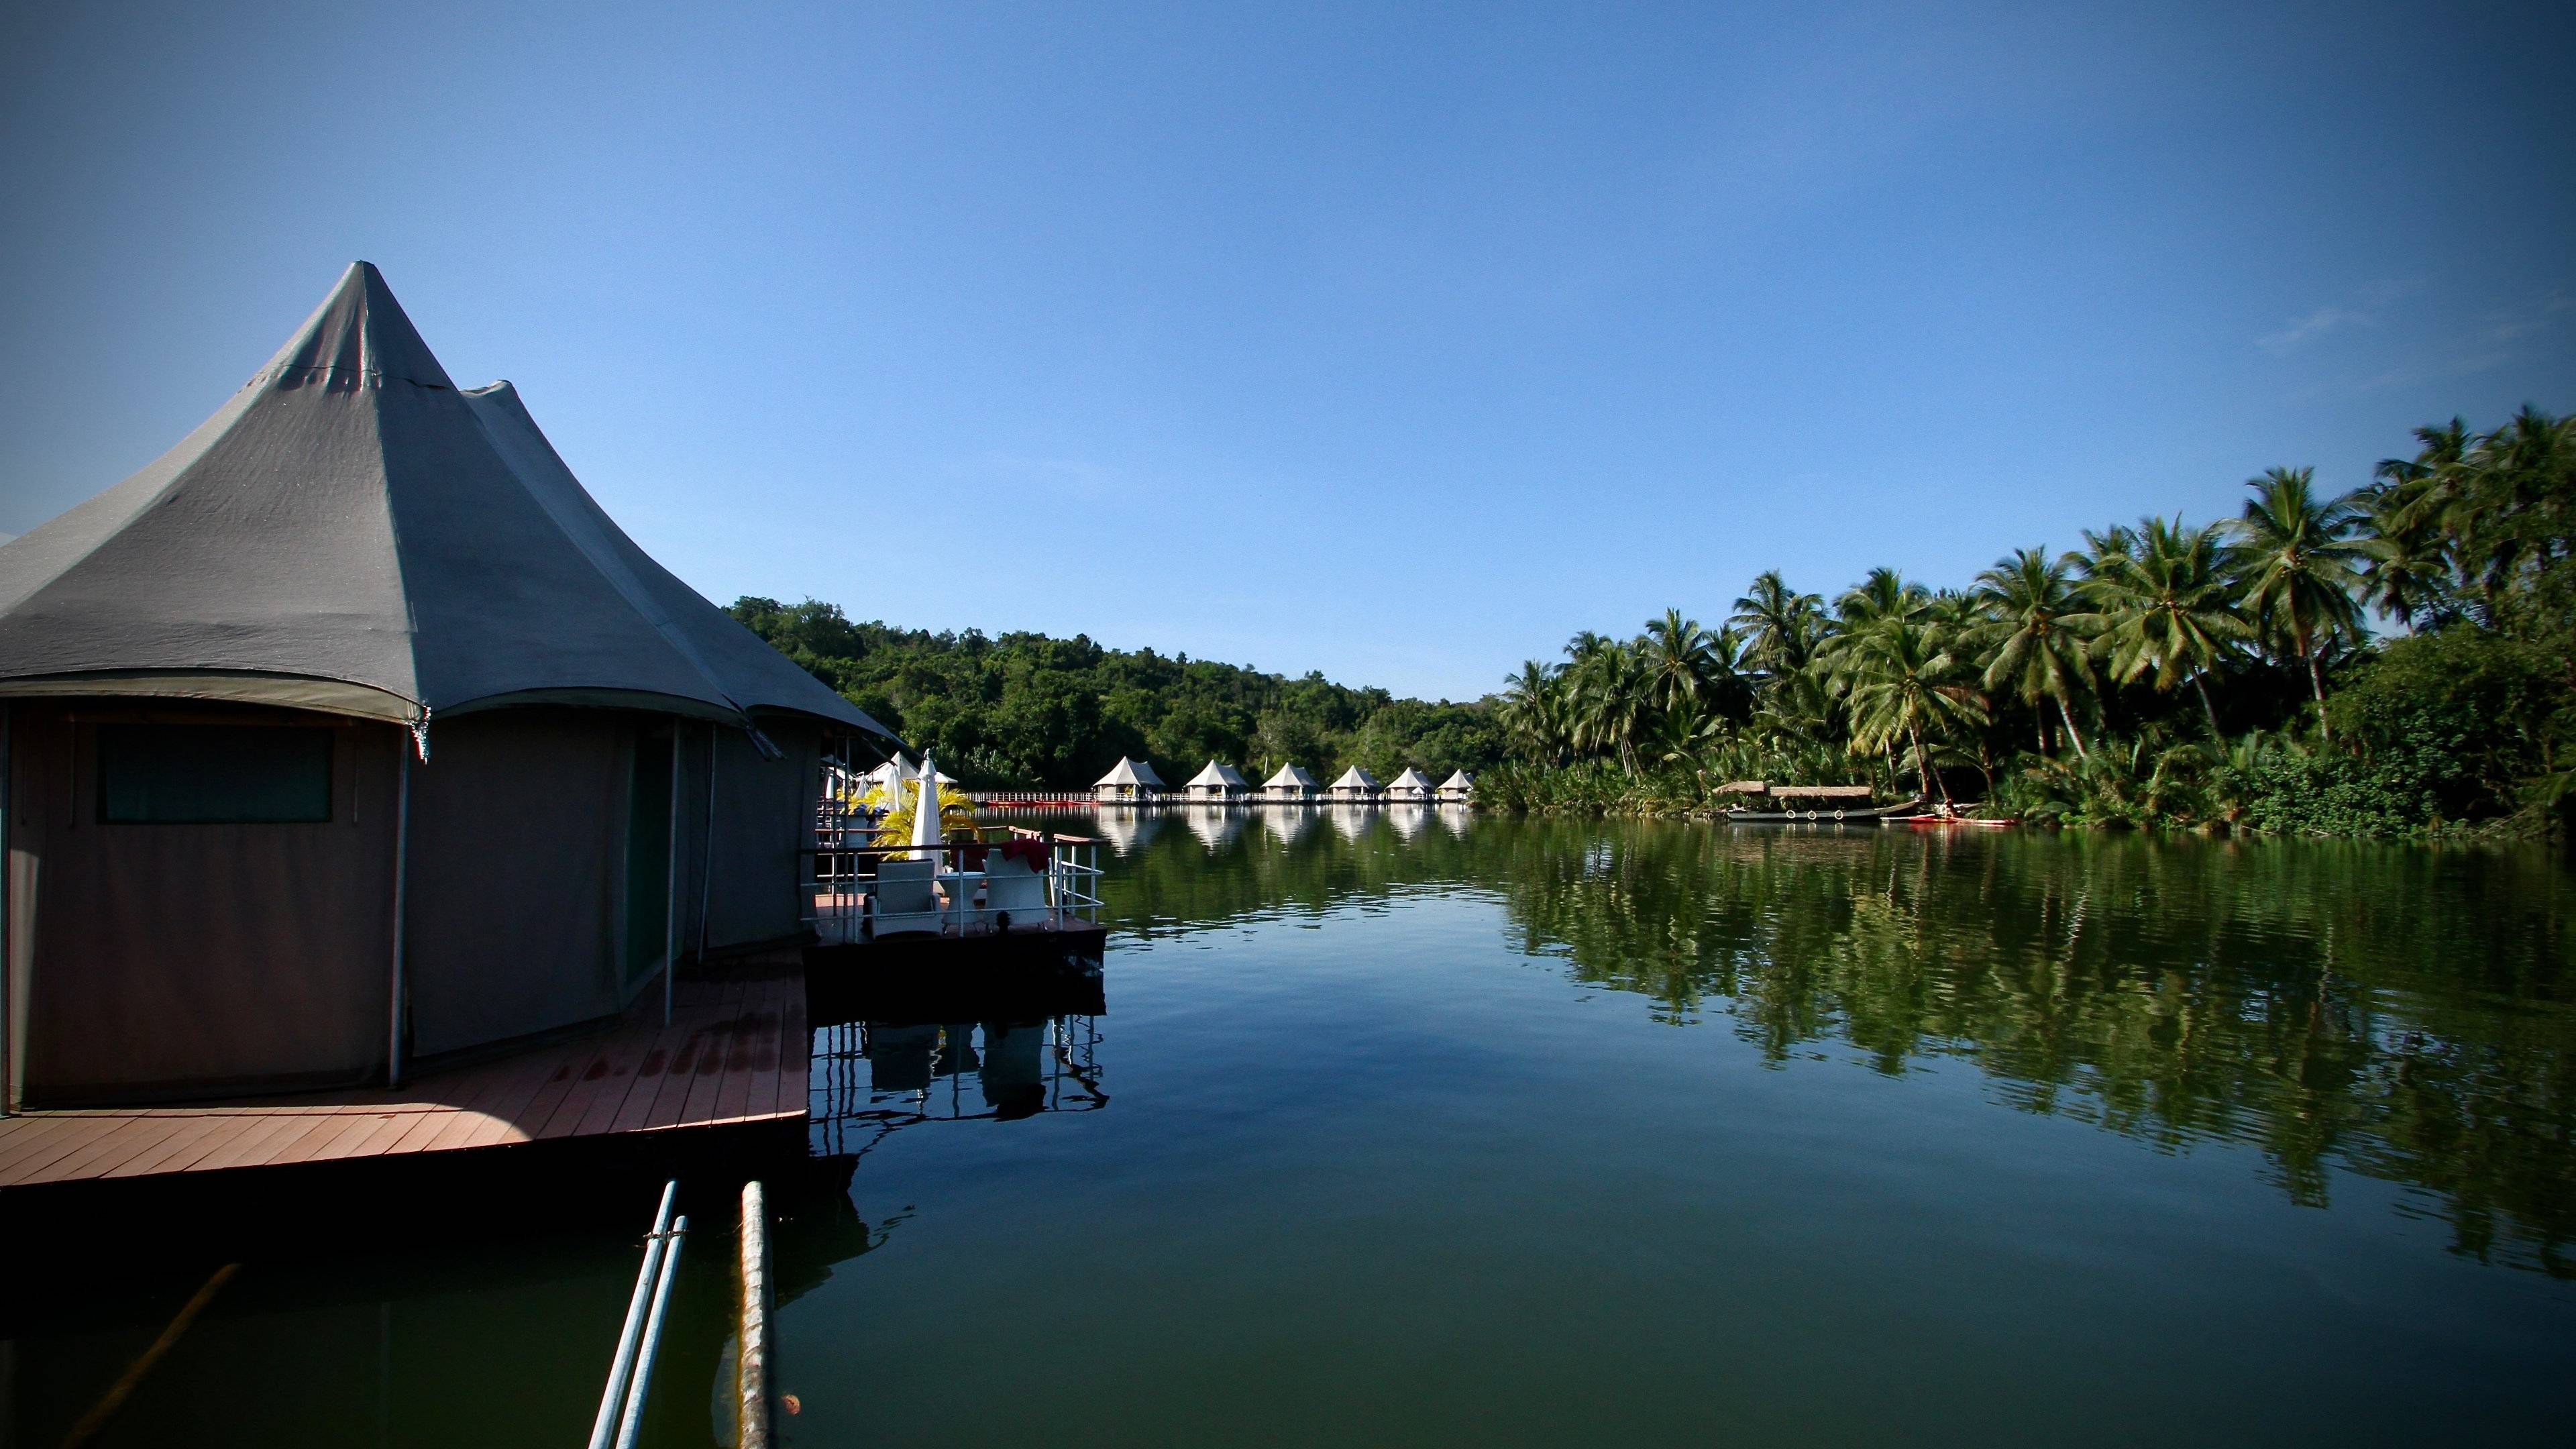 Nuestro Recorrido Favorito en grupo, Lago Thonle Sap y Junglas